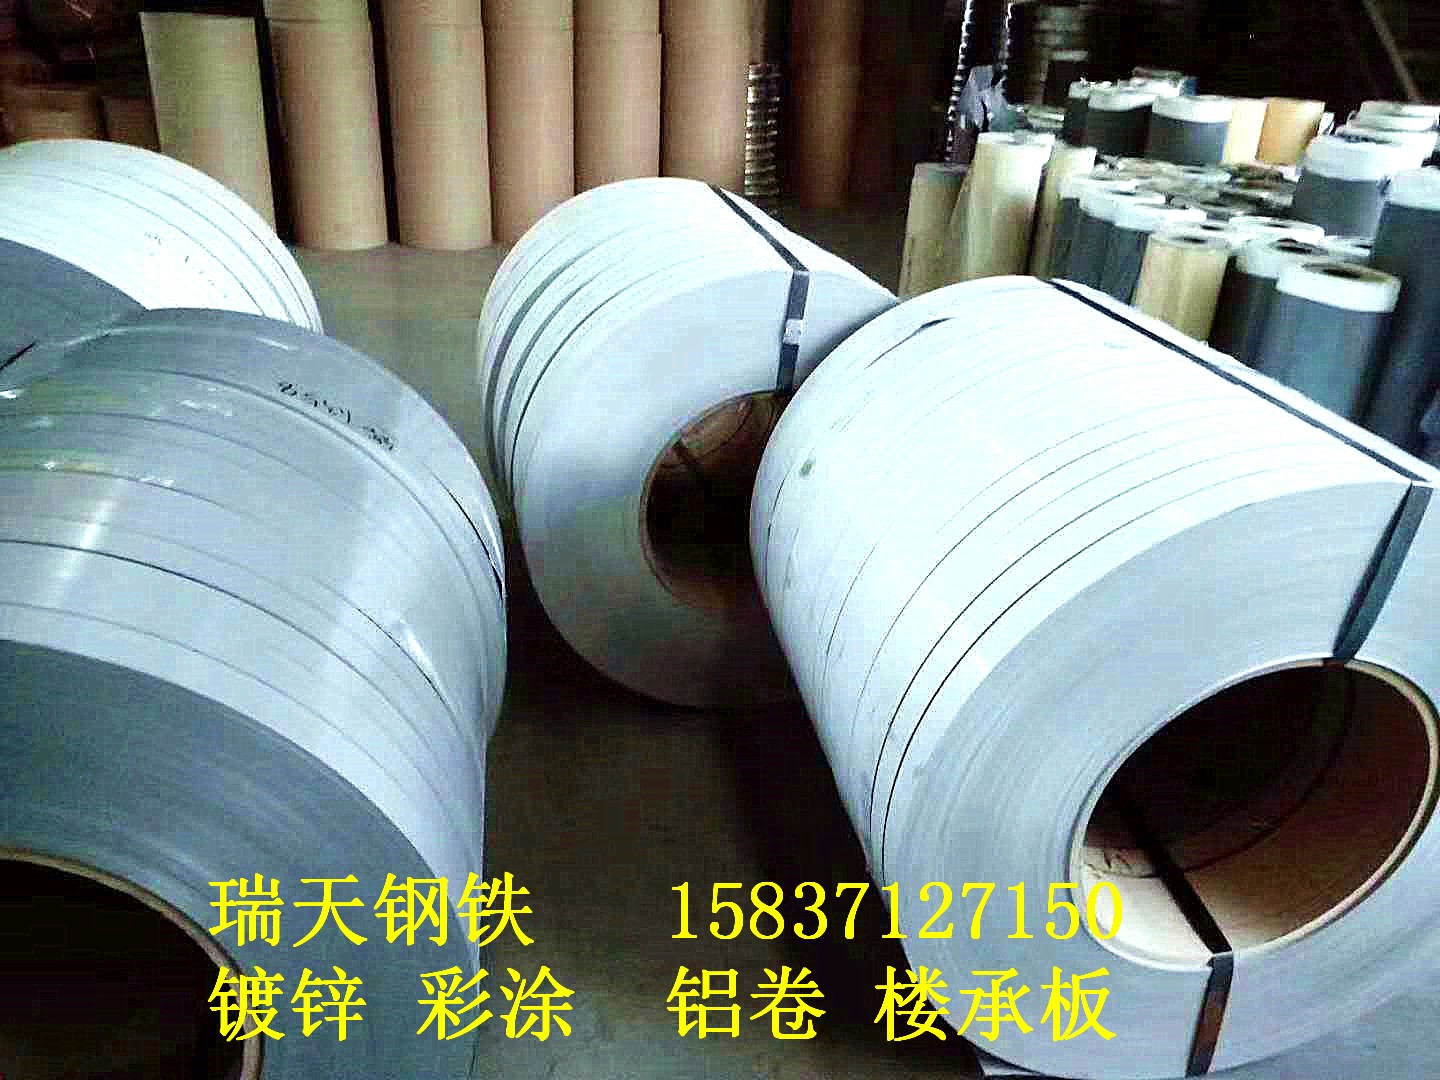 郑州铝板厂家直销郑州铝板价格行情